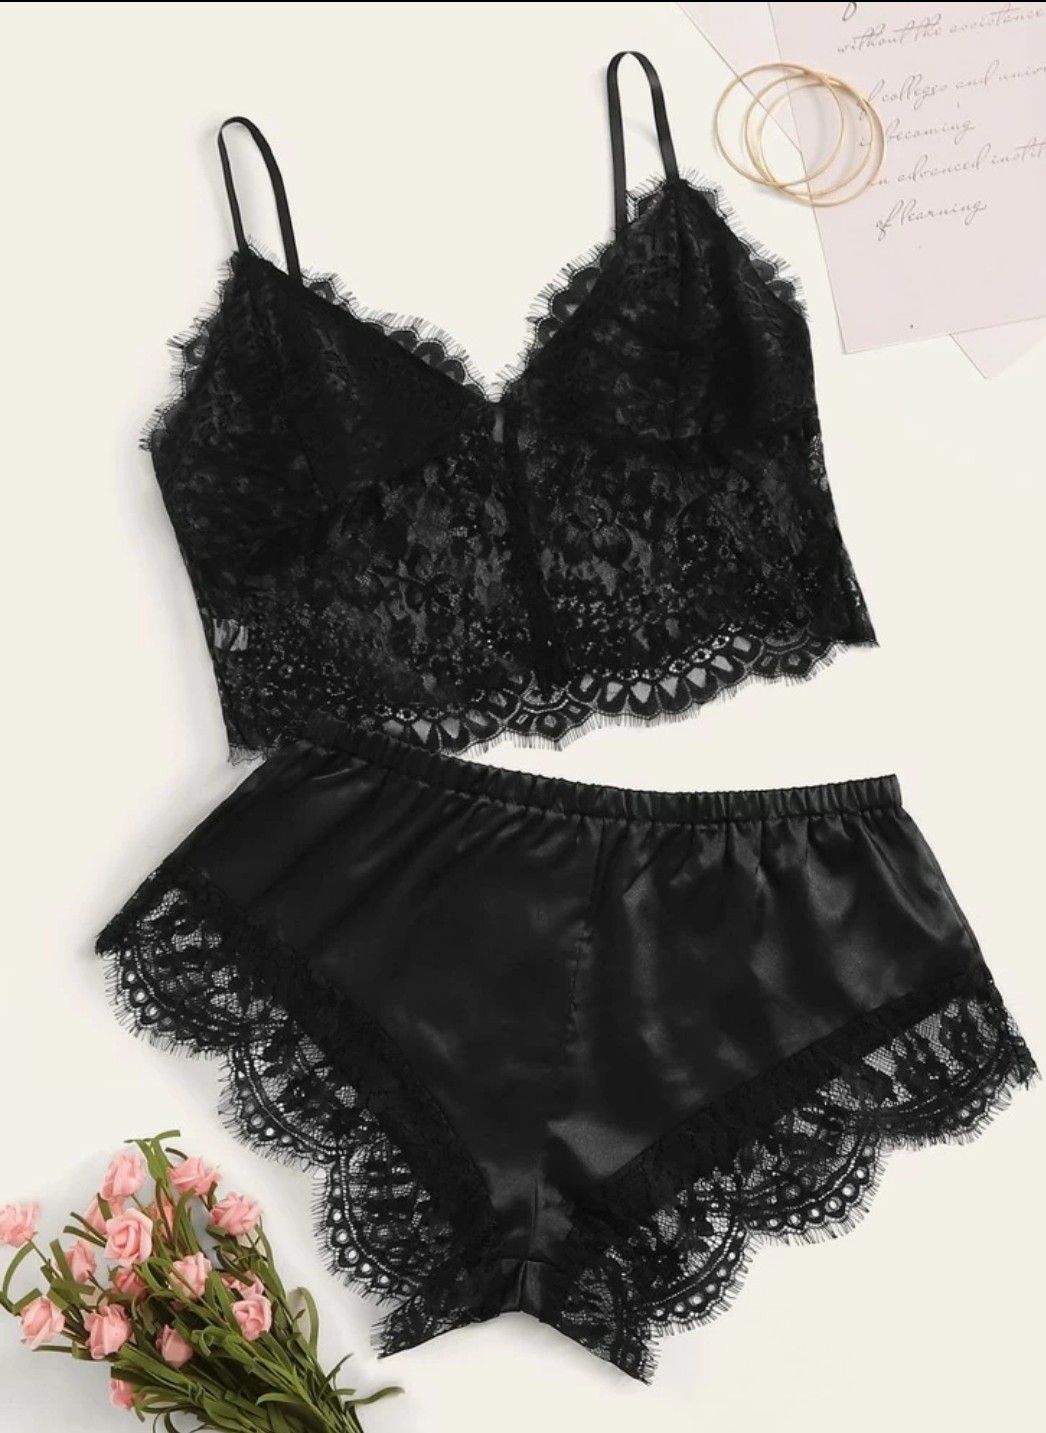 Eyelash floral lace lingerie set